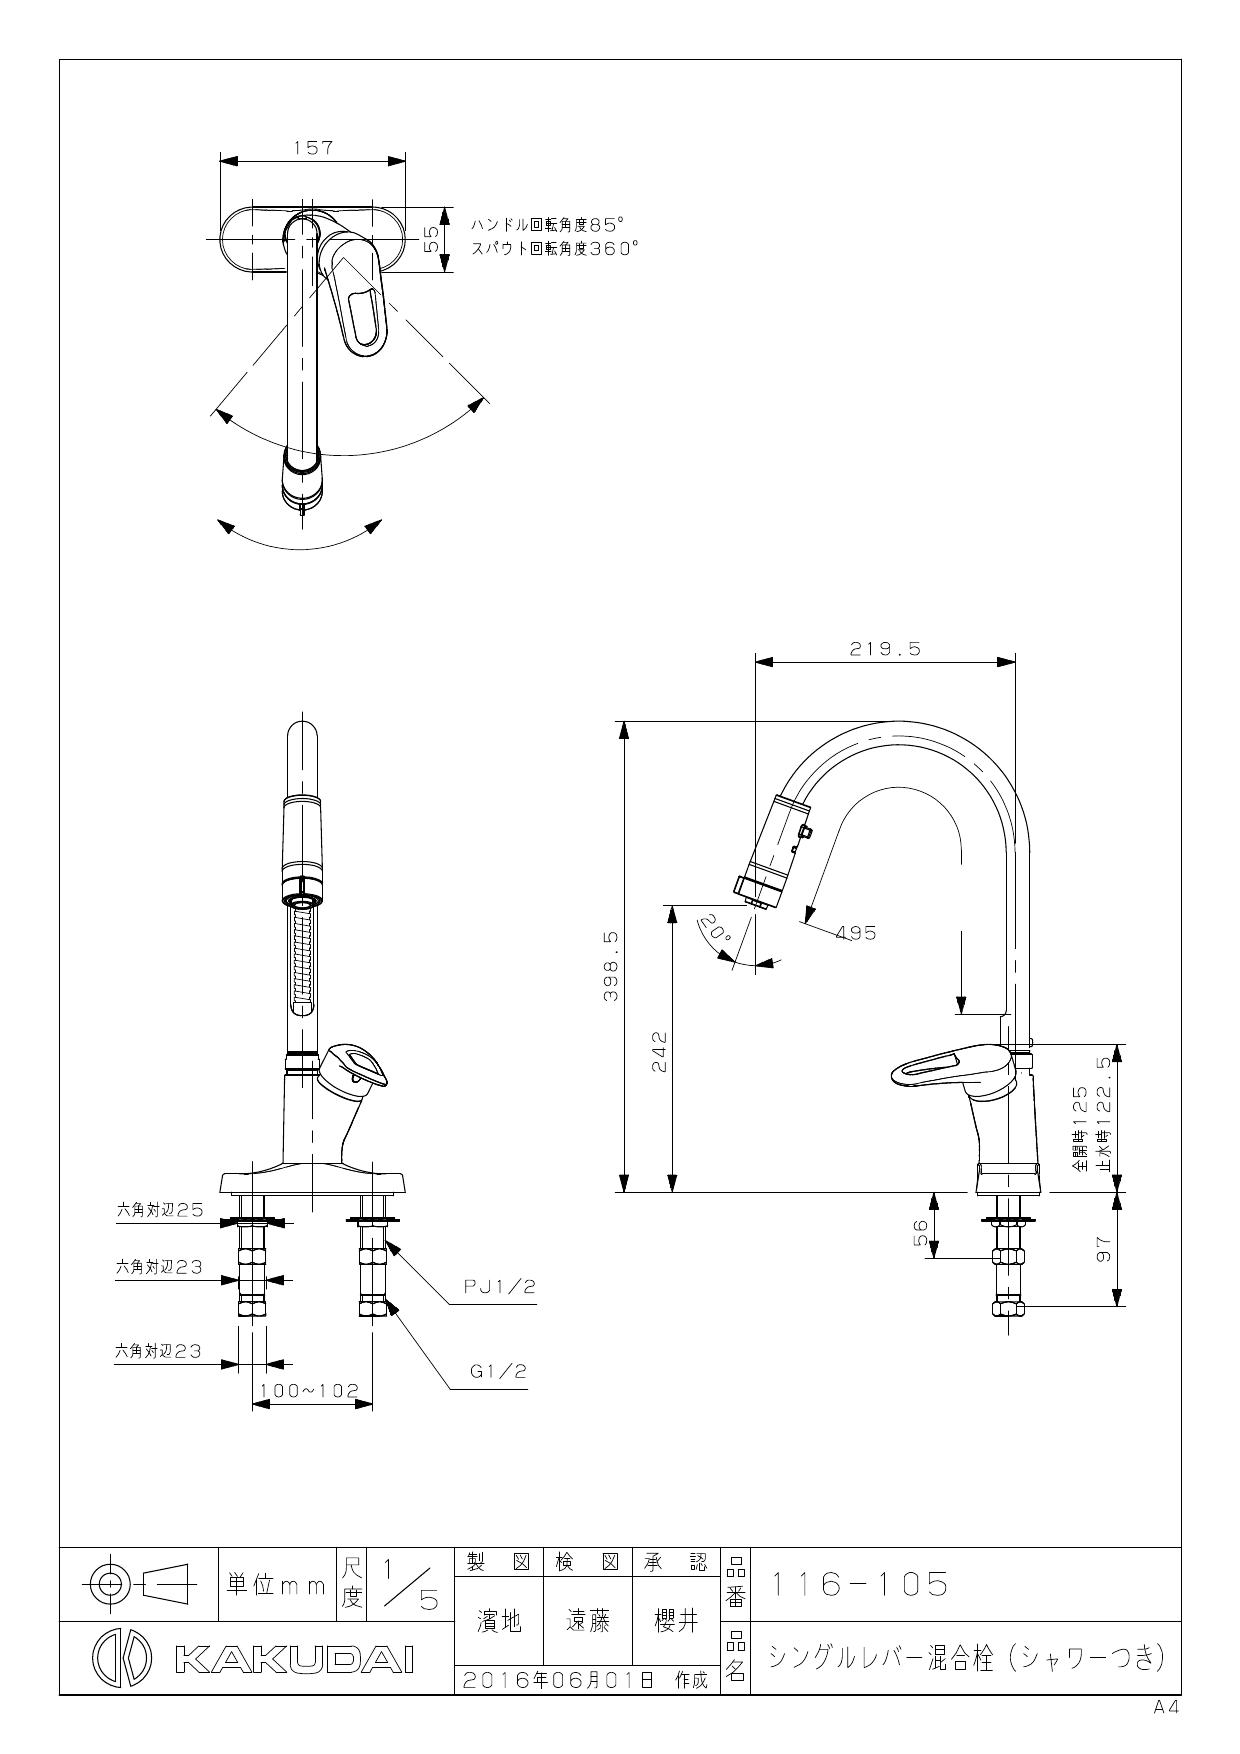 カクダイ 116-105取扱説明書 商品図面 | 通販 プロストア ダイレクト